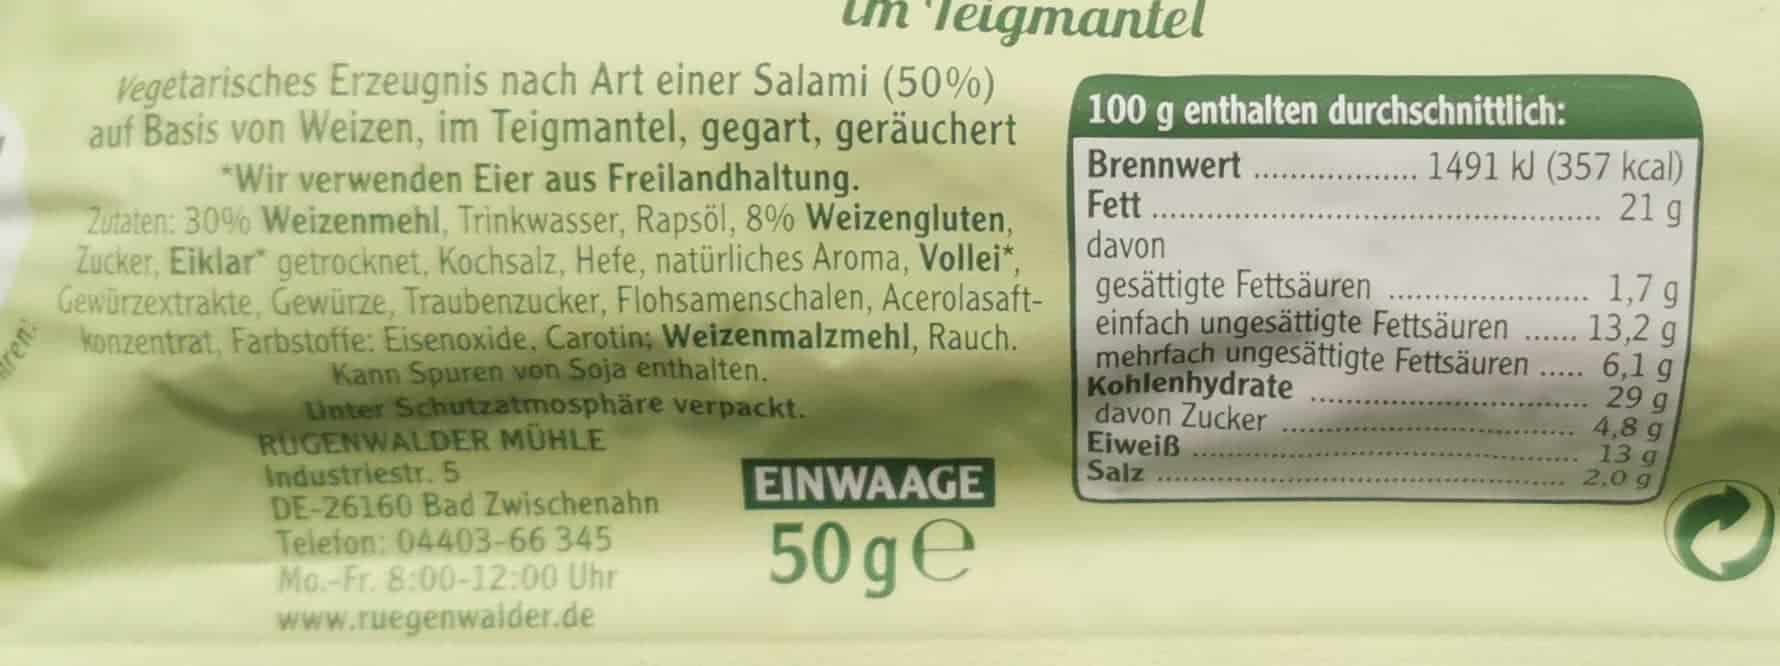 Rügenwalder Mühle: Vegetarischer Mühlen Snack Teigmantel Salami Zutaten